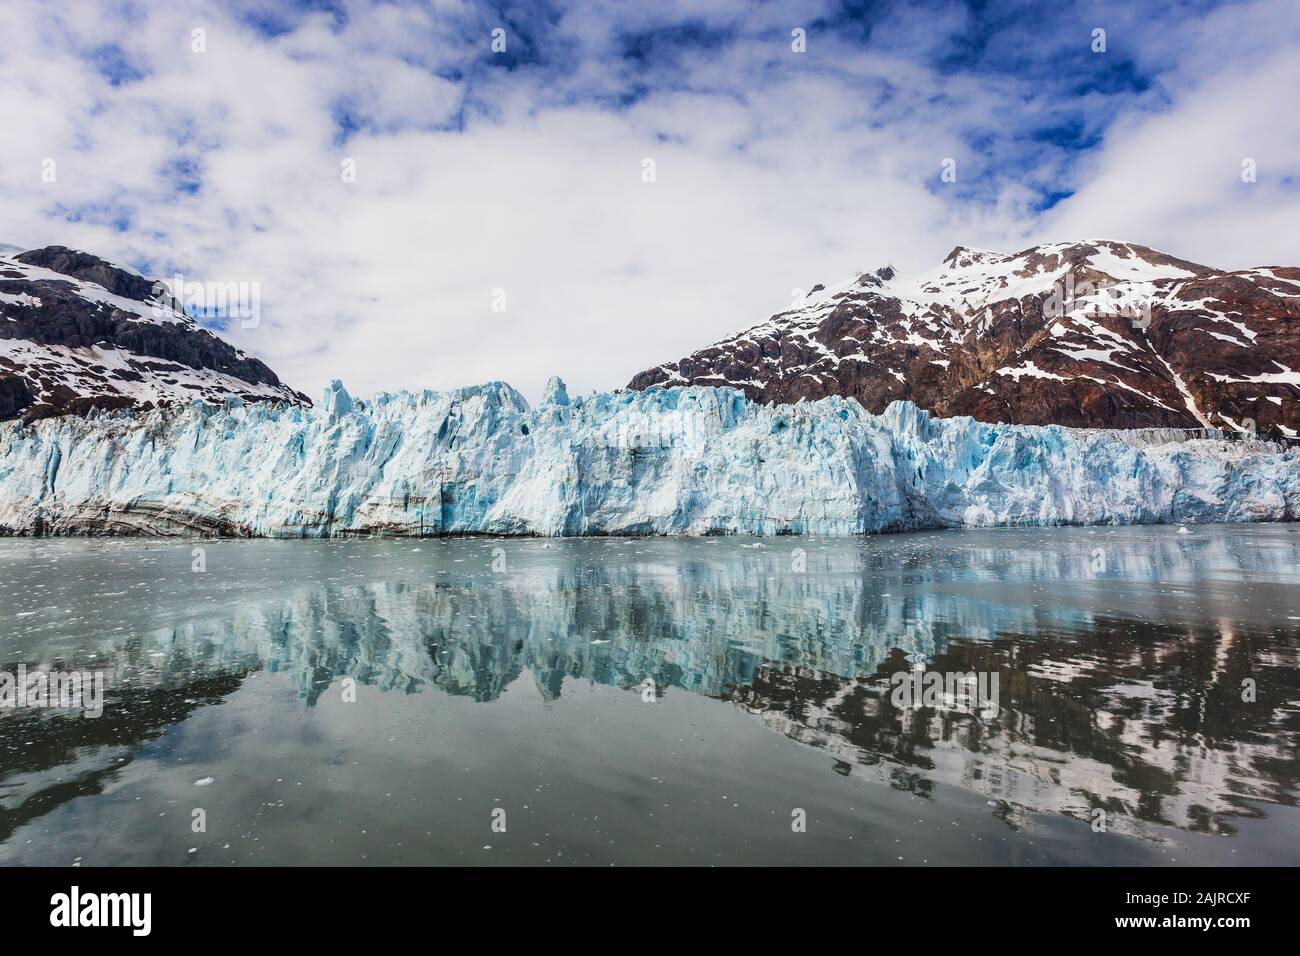 Alaska. Margerie glacier in the Glacier Bay National Park. Stock Photo